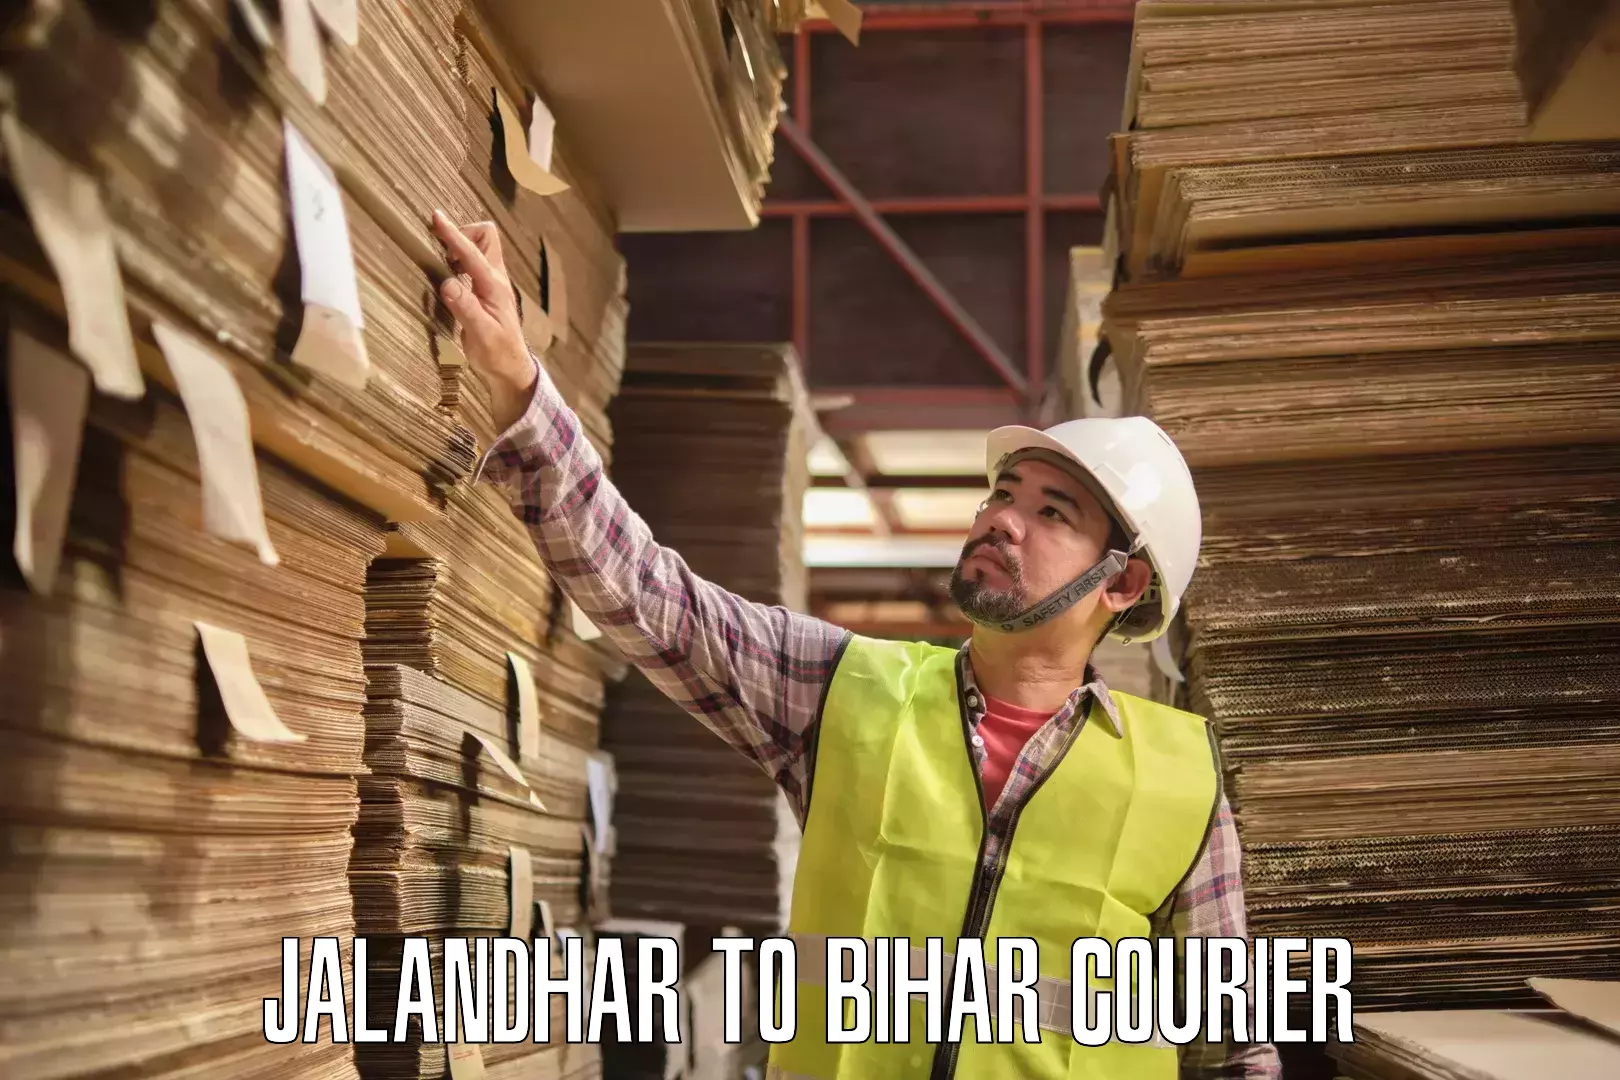 International courier networks Jalandhar to Forbesganj